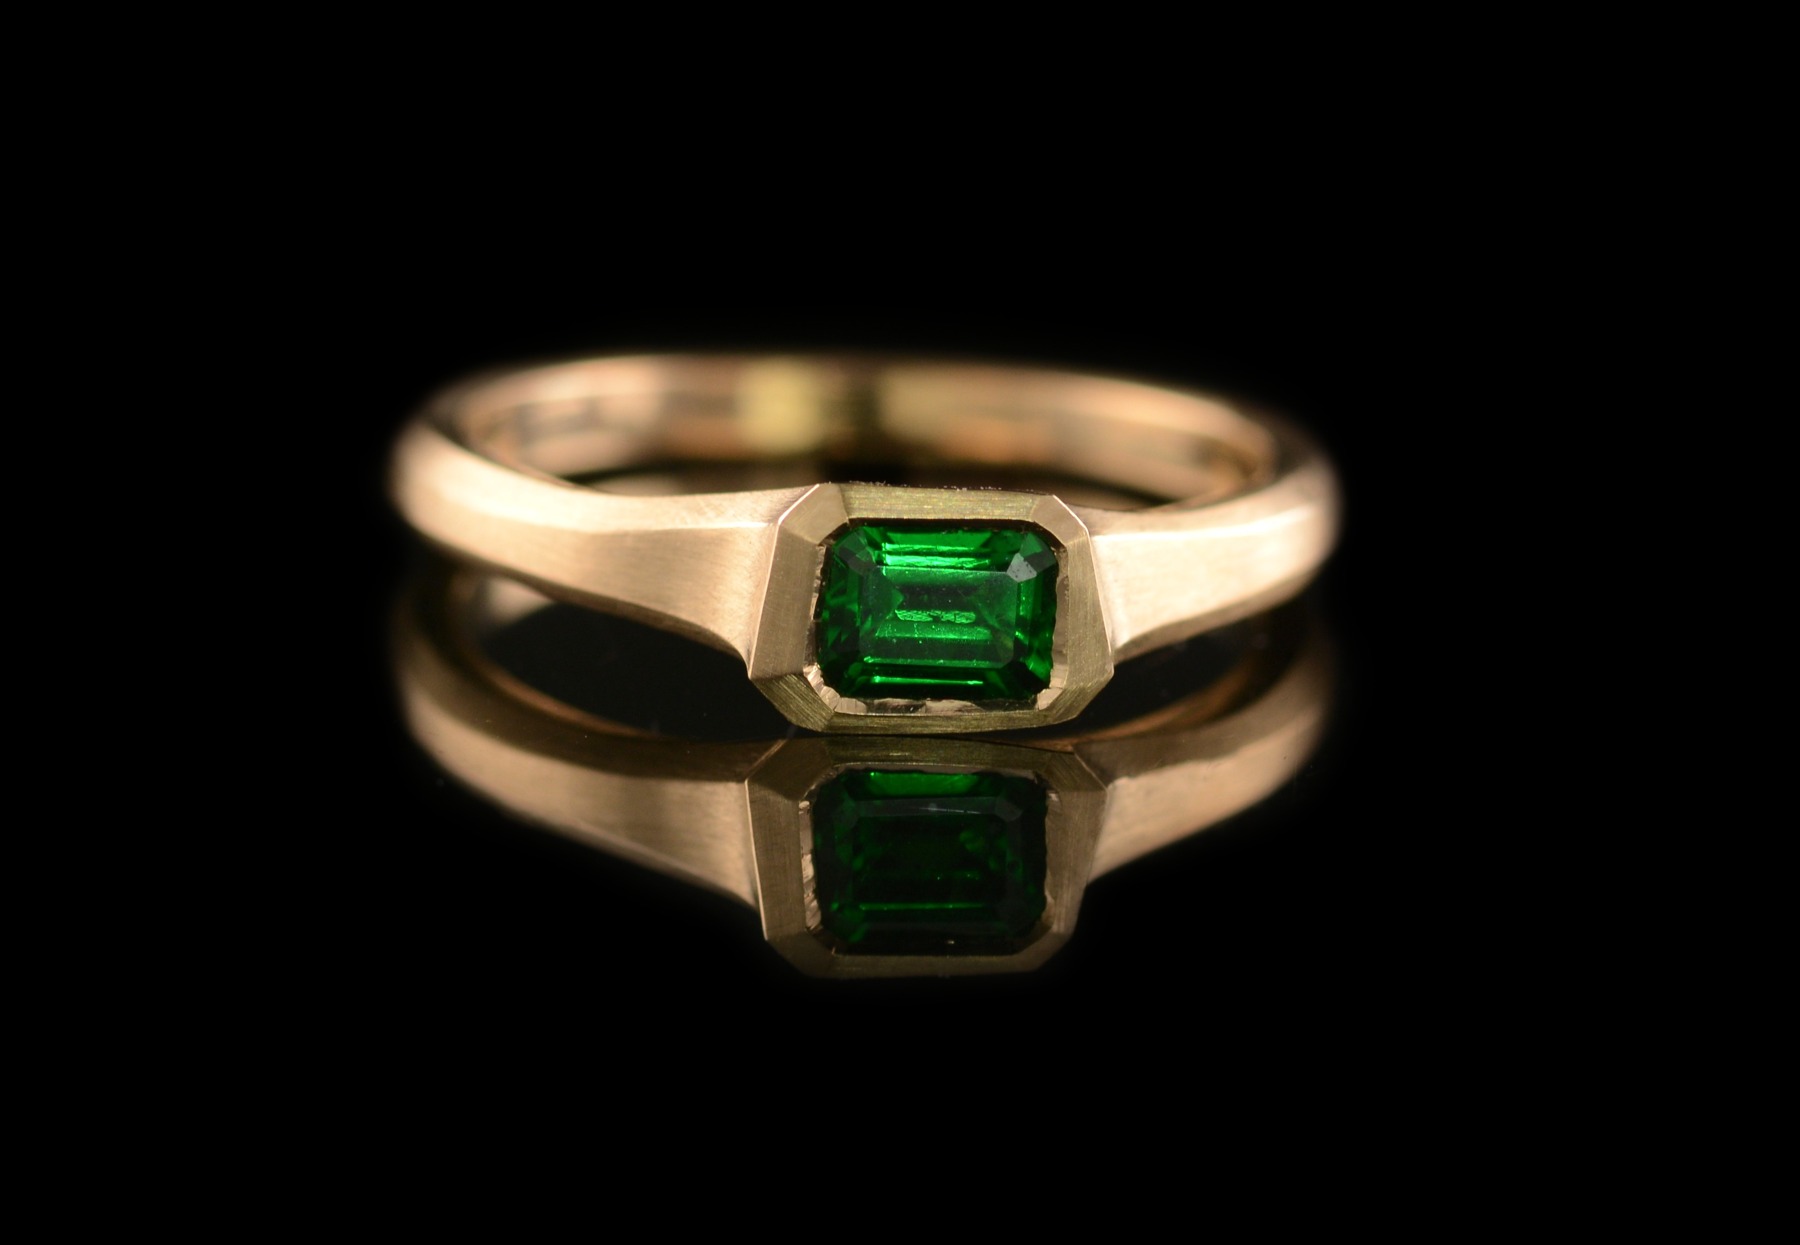 Tsavorite green garnet carved ring commission